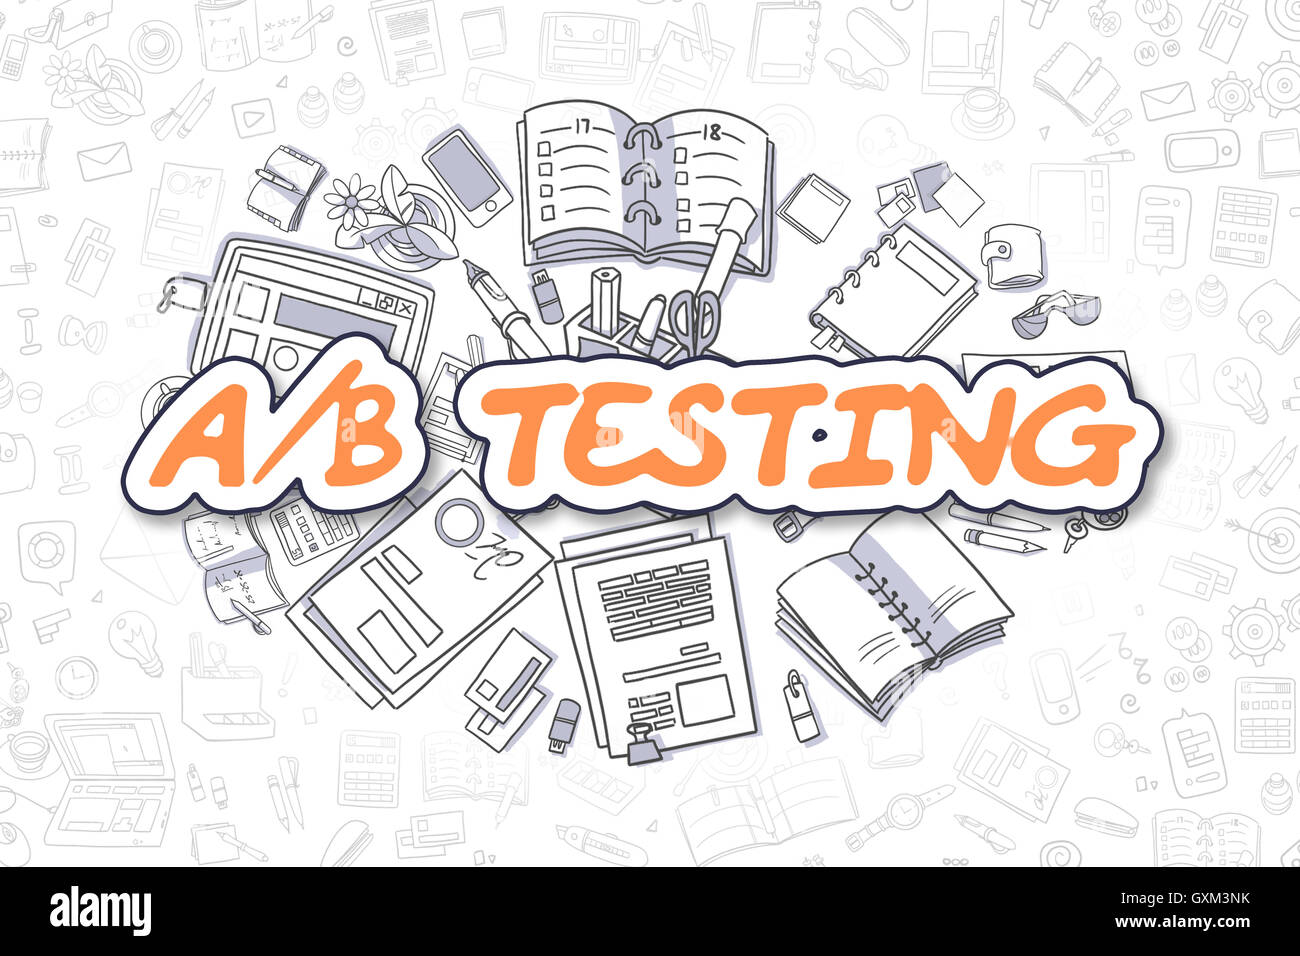 AB Testing - Doodle Un texte orange. Concept d'entreprise. Banque D'Images